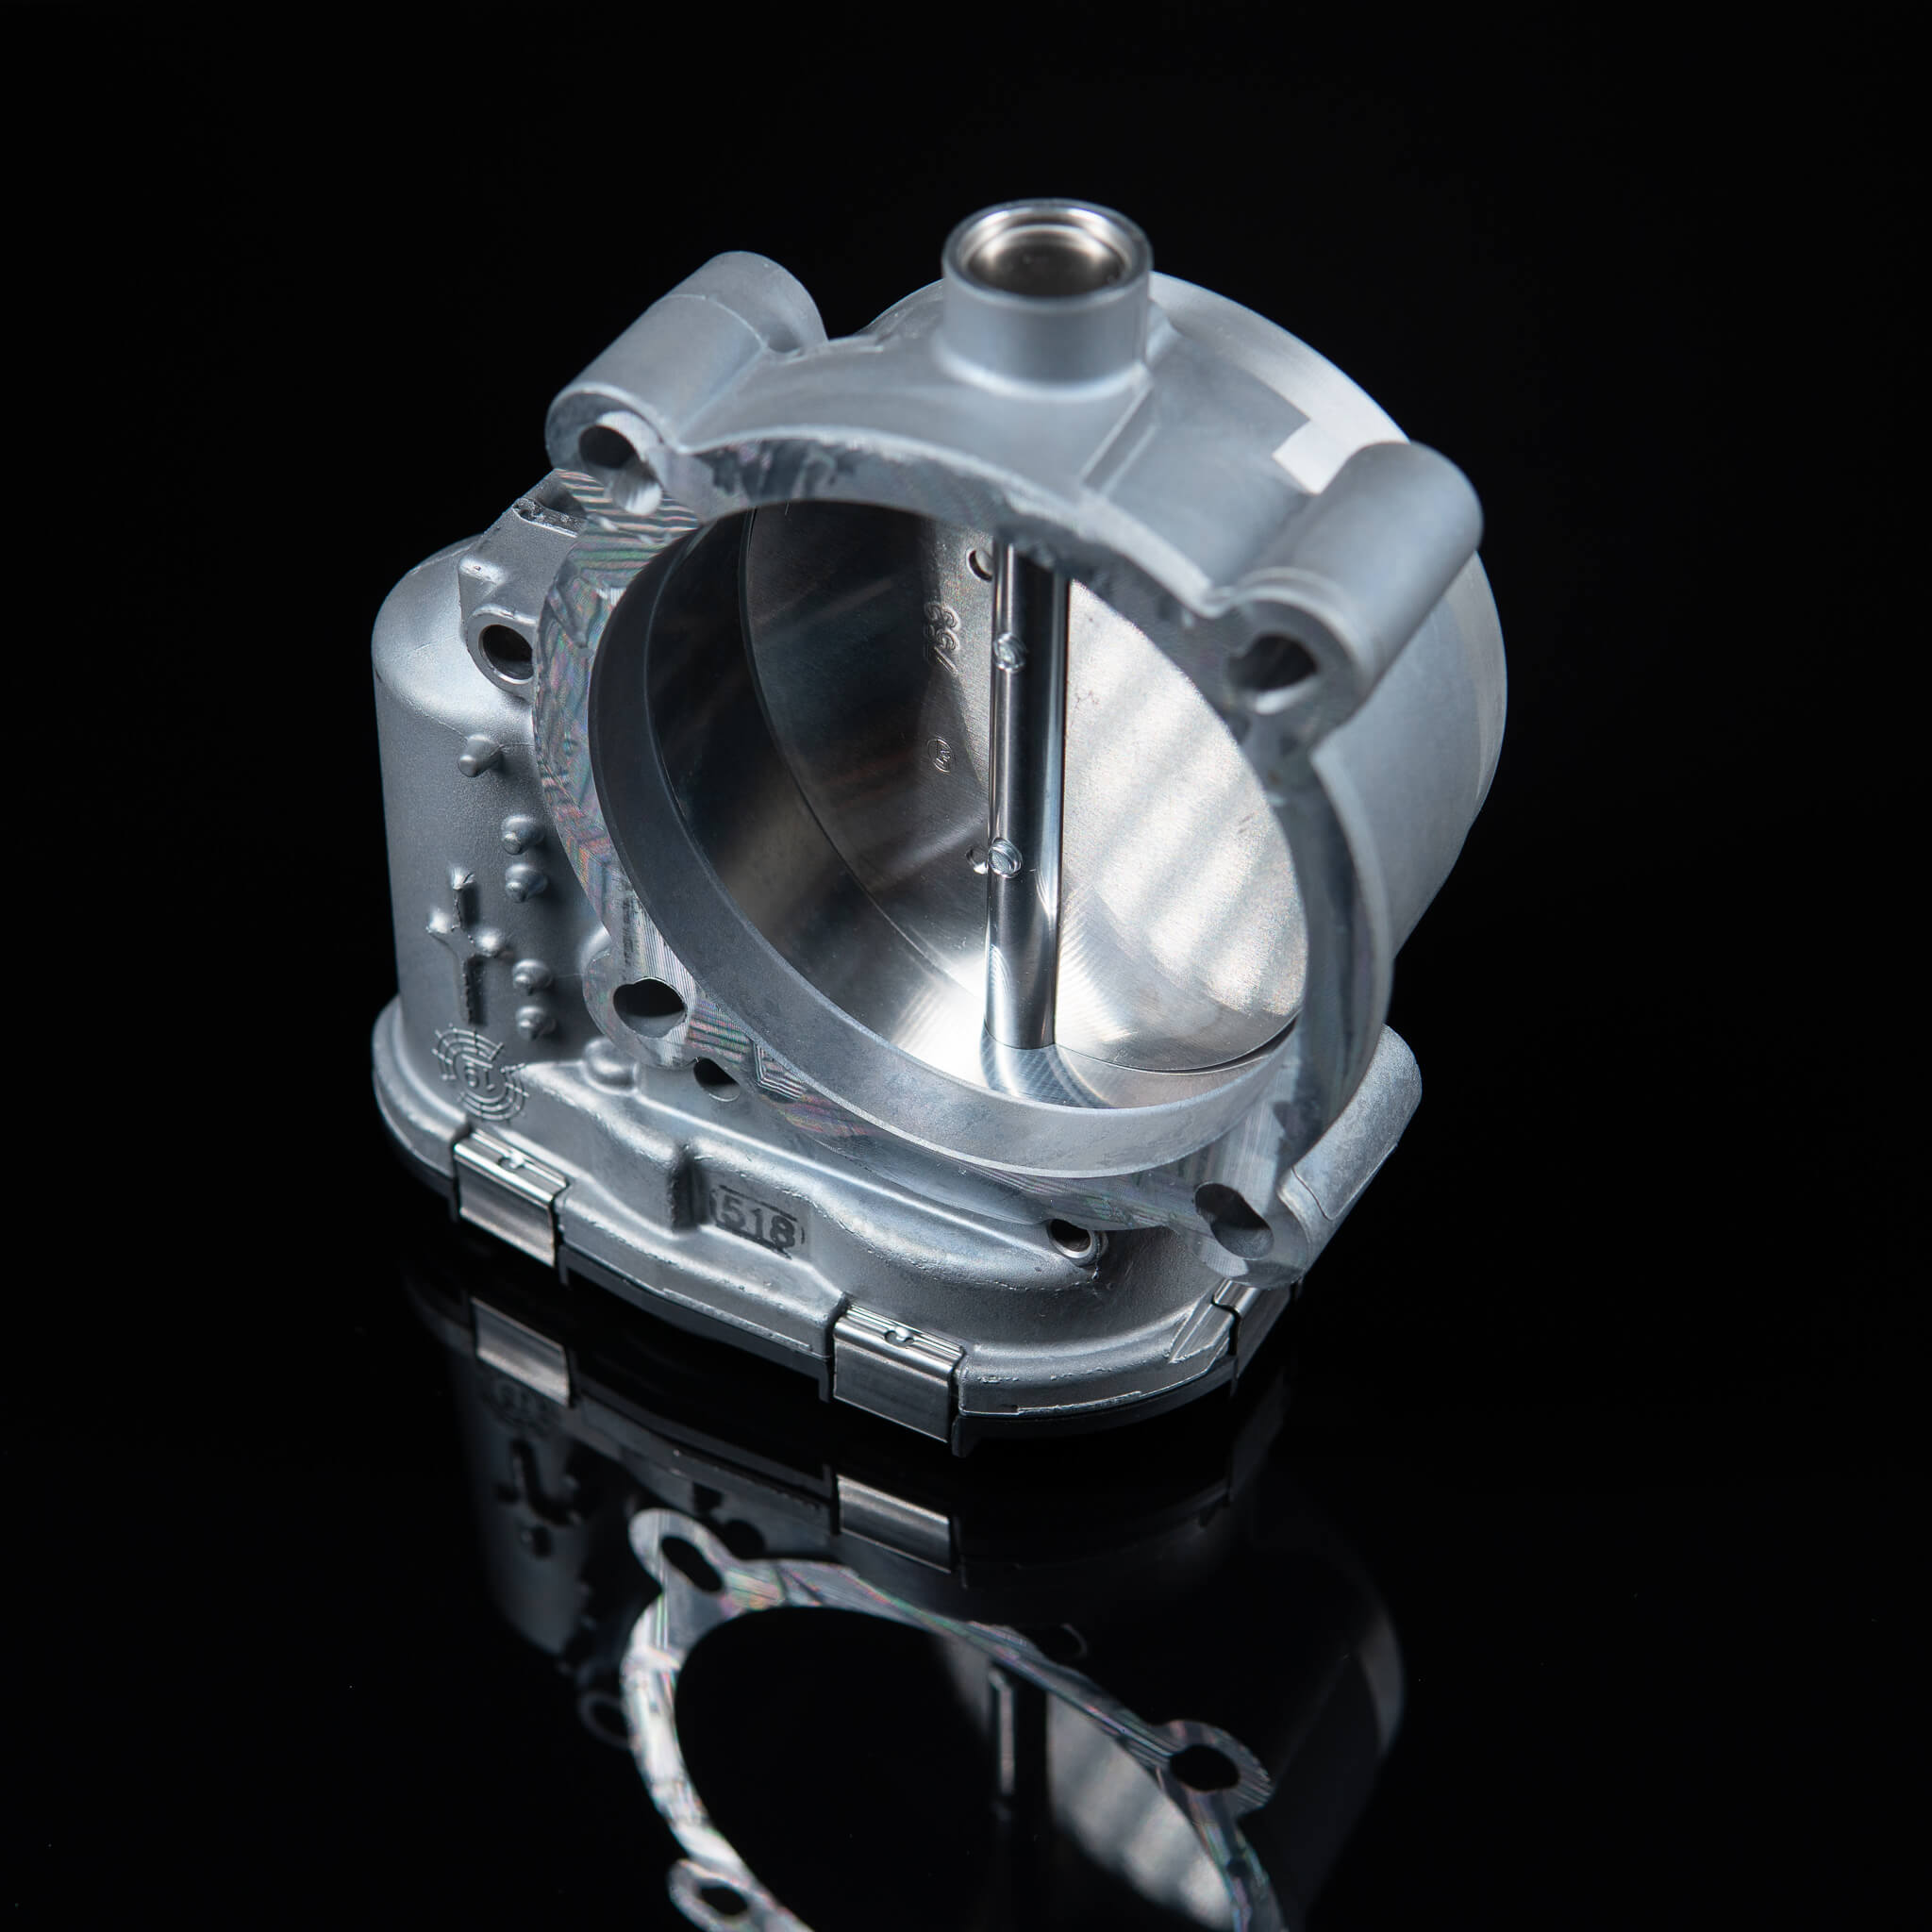 Bosch 82mm Drosselklappe bearbeitet für RS4 Lochkreis mit Stecker - The  Tuner